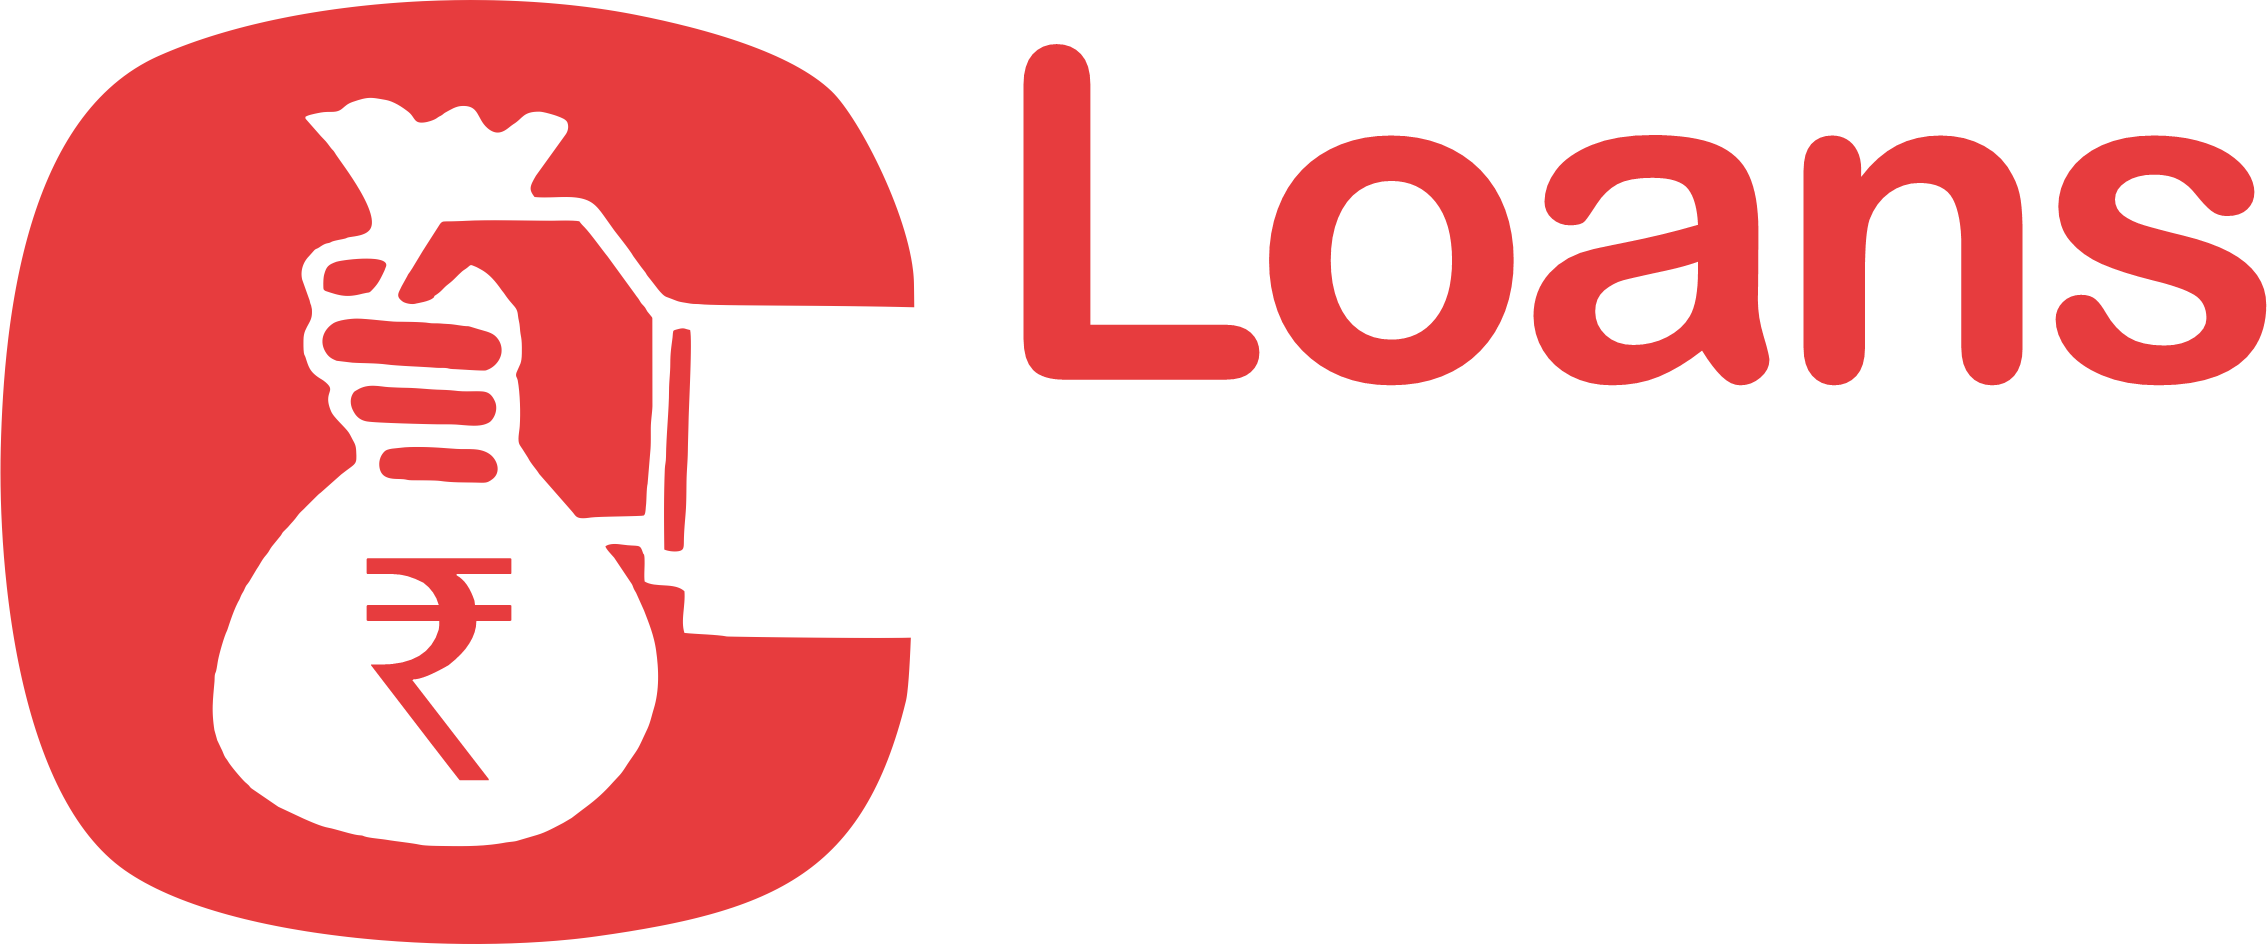 Loan ATM